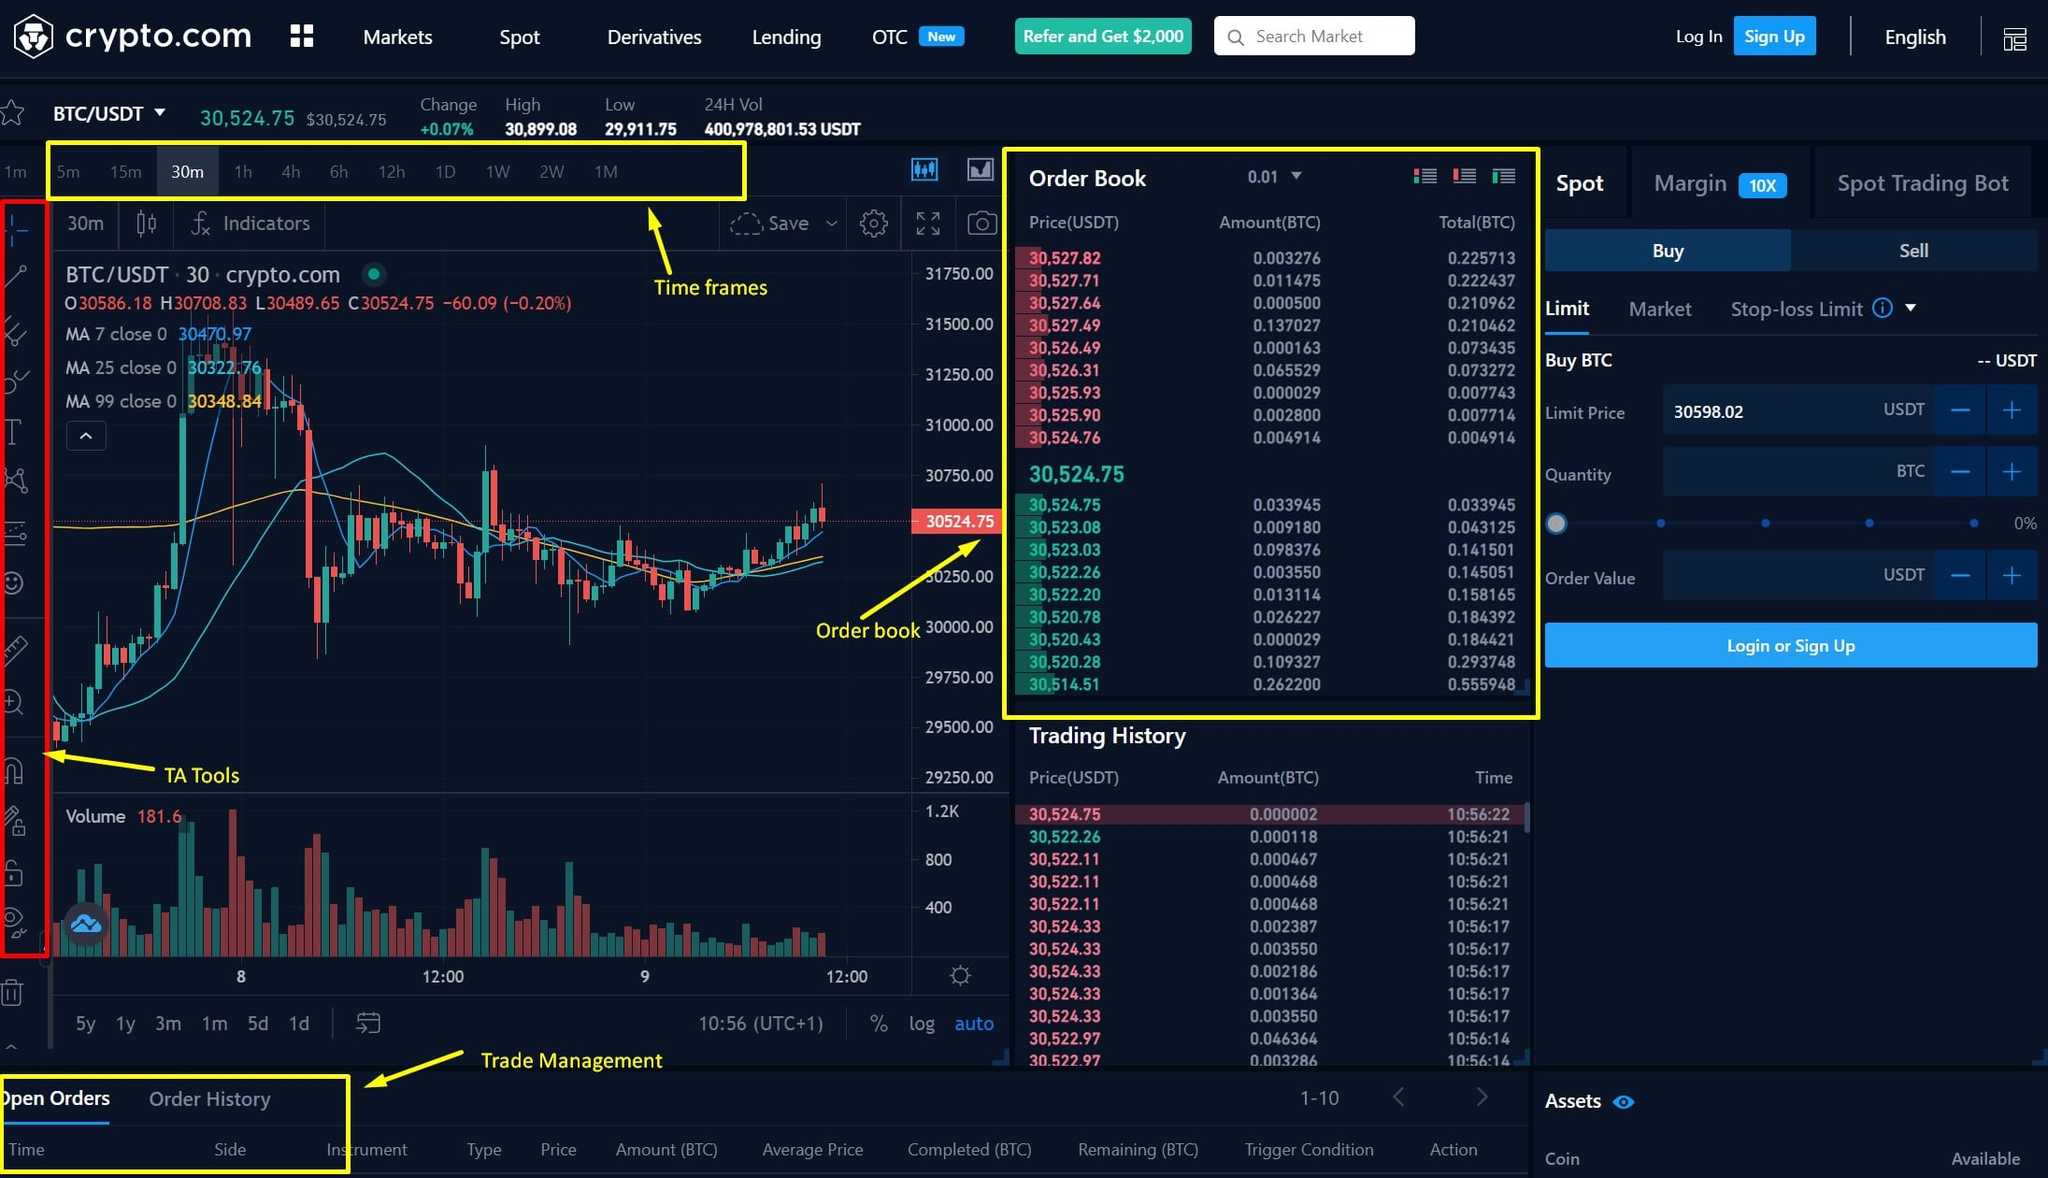 Crypto.com trading screen